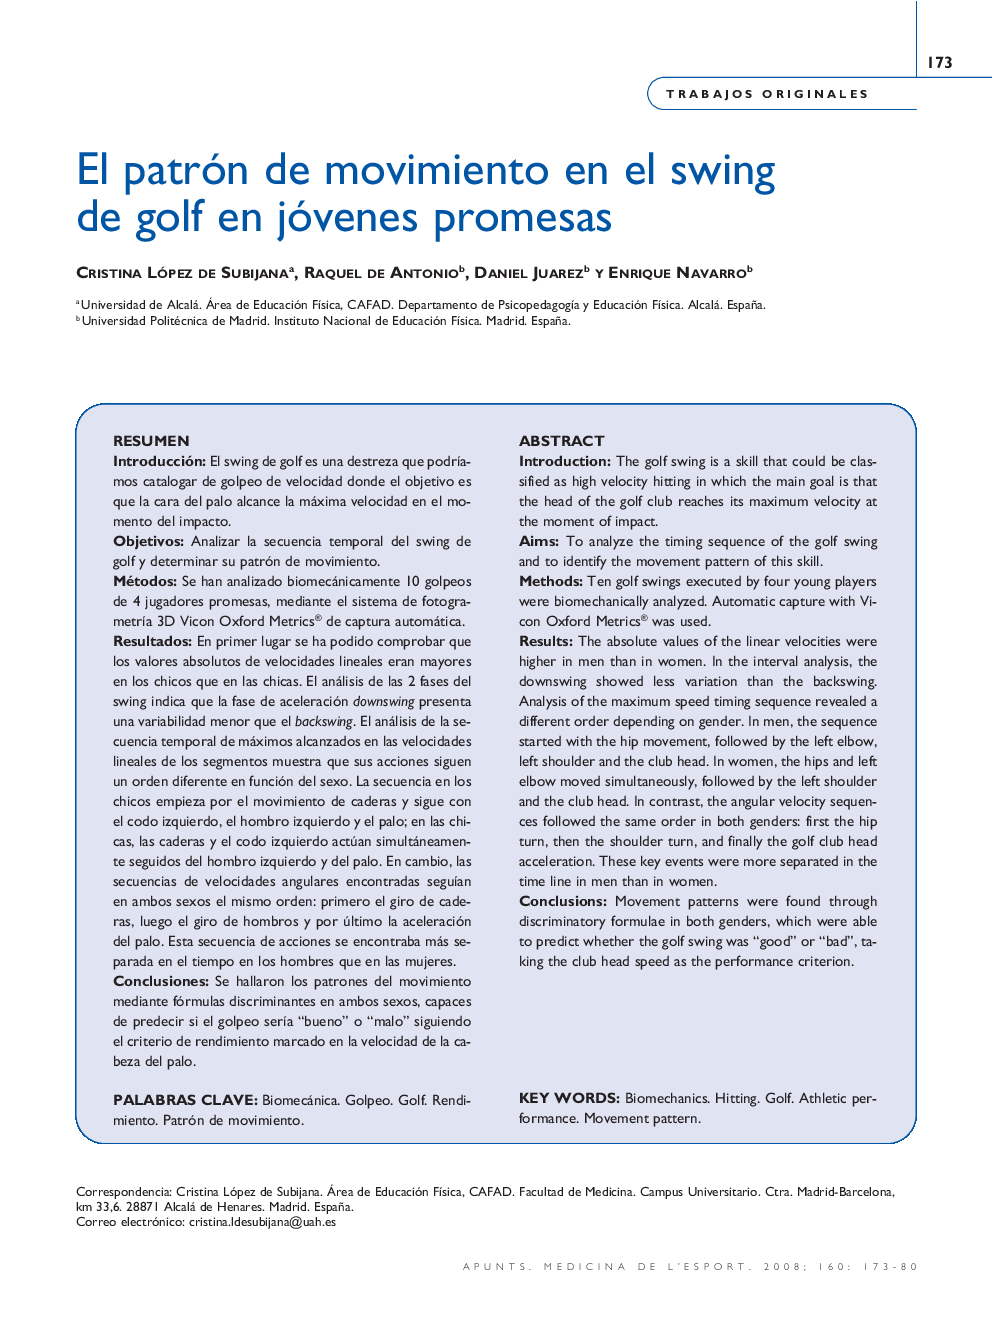 El patrón de movimiento en el swing de golf en jóvenes promesas